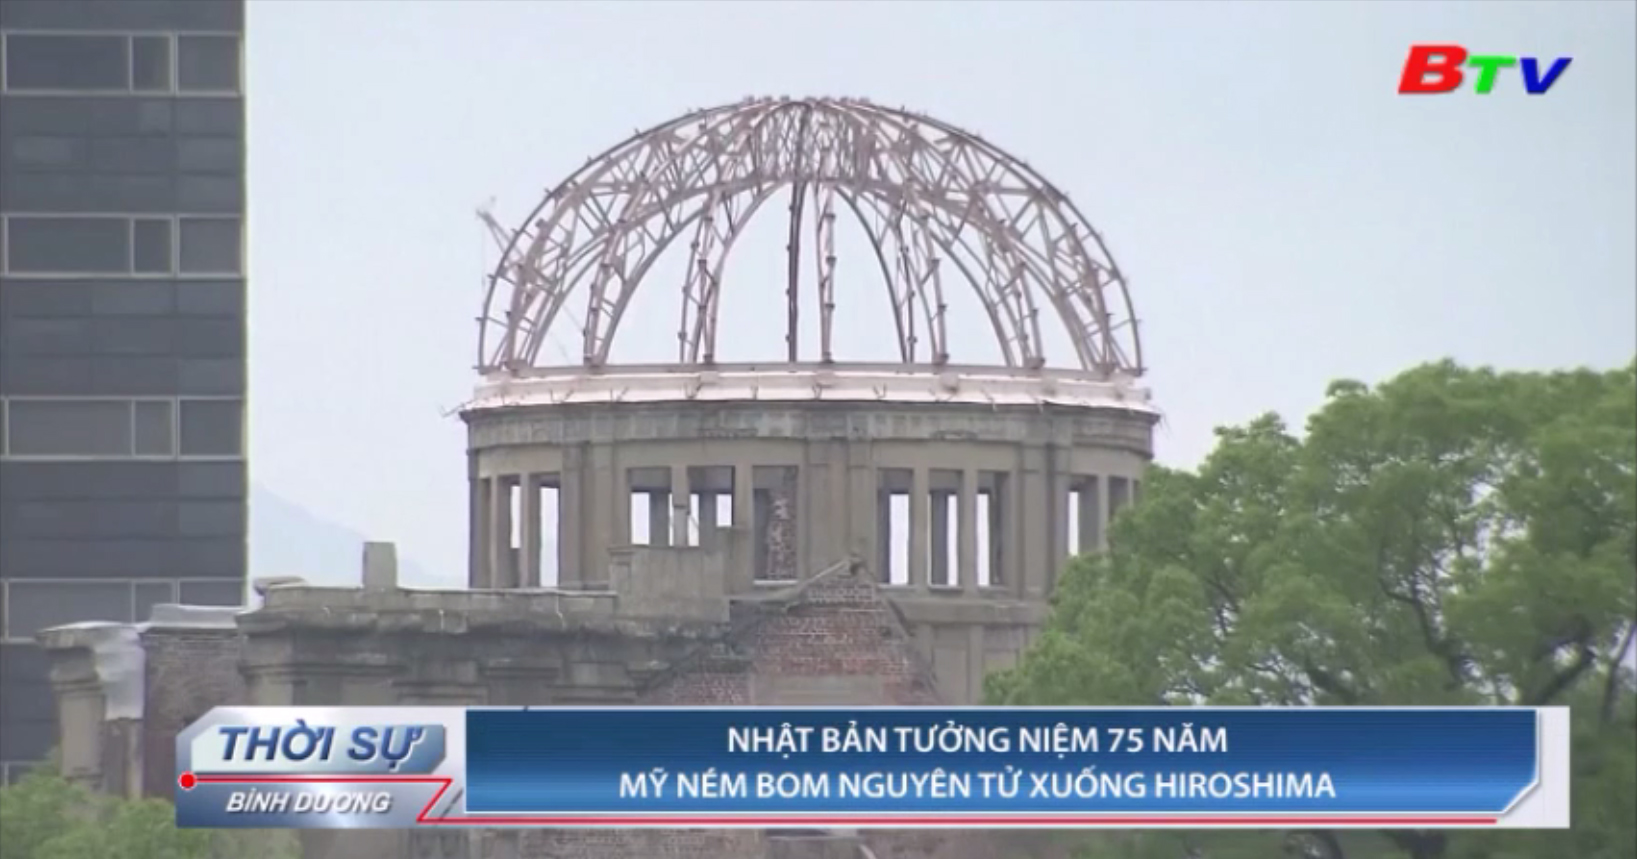 Nhật Bản tưởng niệm 75 năm Mỹ ném bom nguyên tử xuống Hiroshima